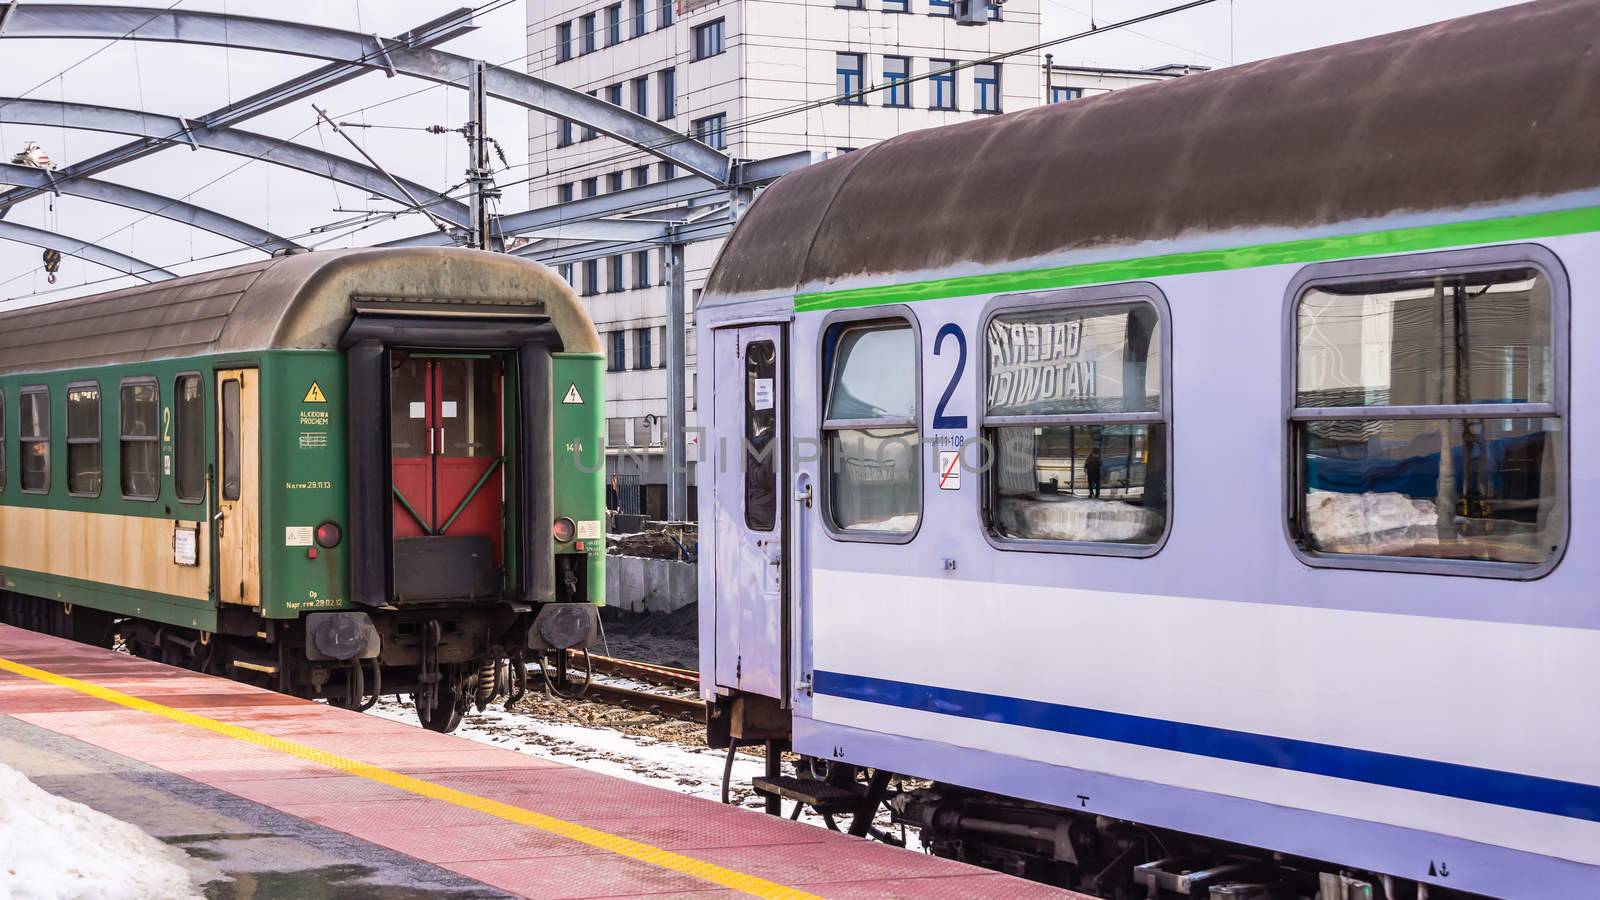 Trains at the station in Katowice by pawel_szczepanski